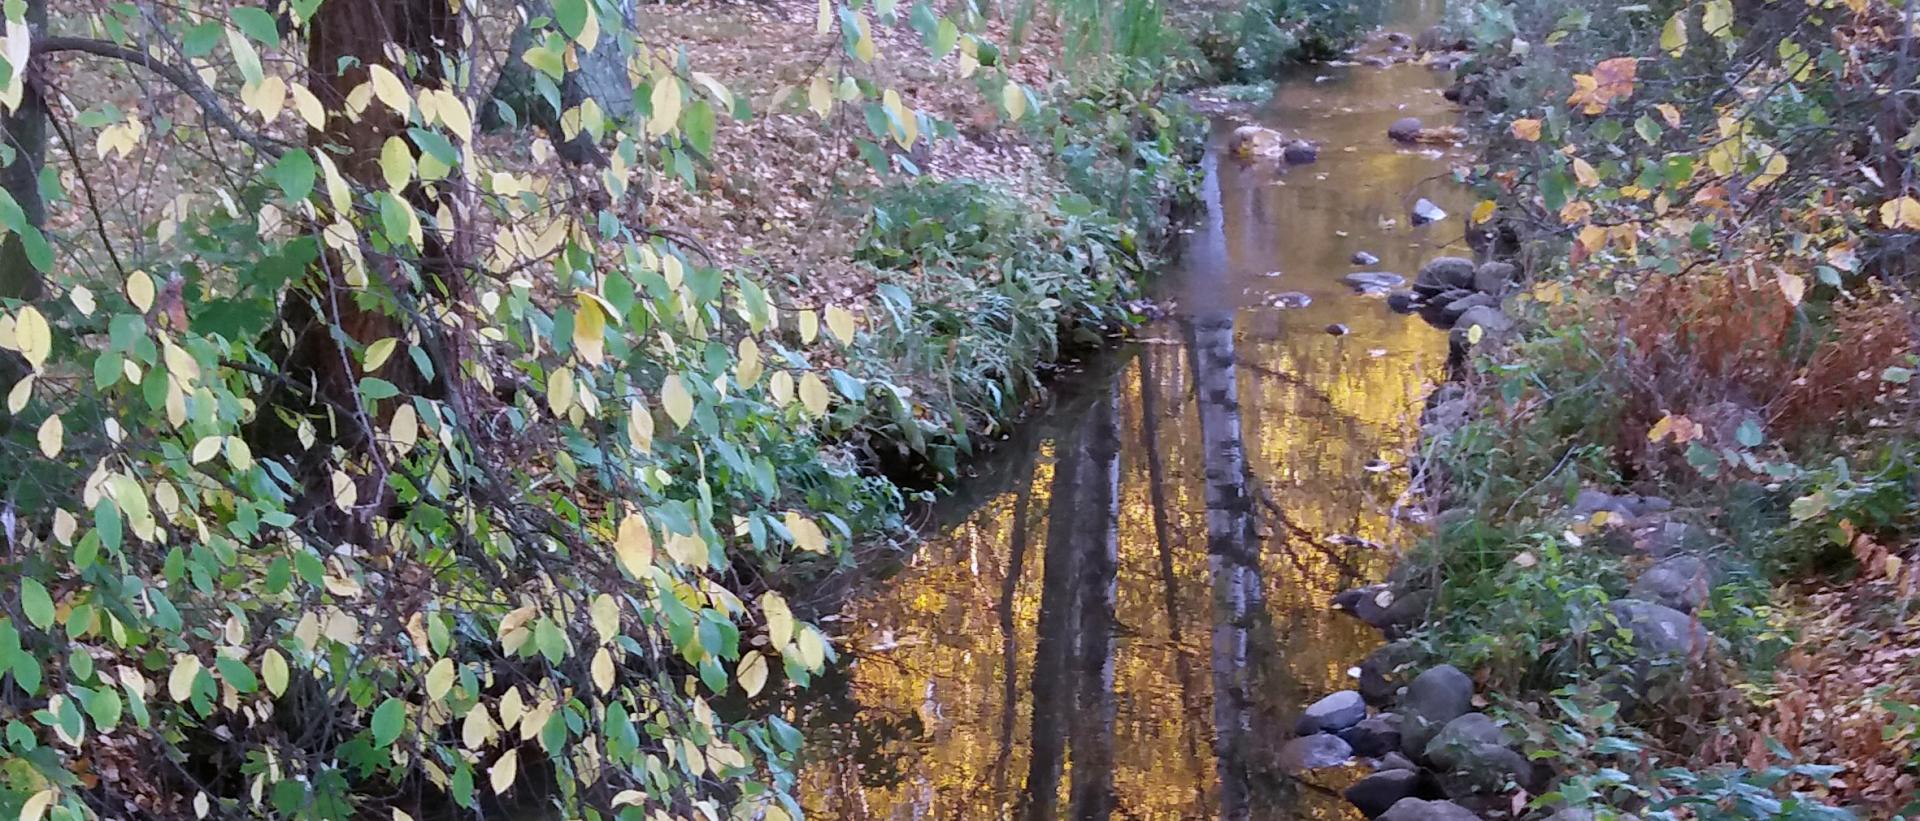 Syksyinen puromaisema, jossa veden pintaan heijastuu koivunrunkoja peilikuvana ylösalaisin